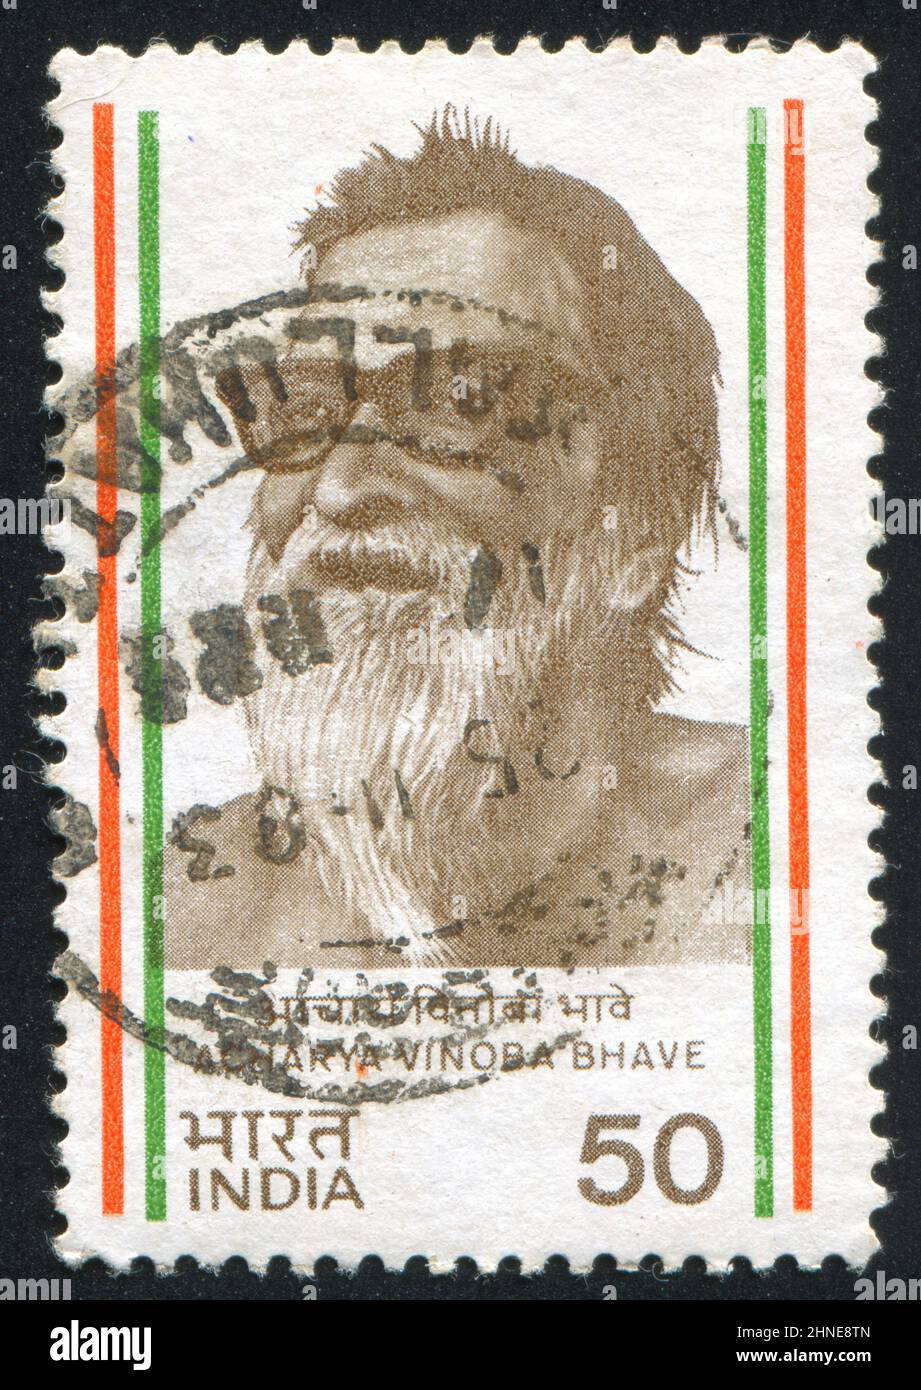 INDIEN - UM 1983: Briefmarke gedruckt von Indien, zeigt Acharya Vinoba Bhave, um 1983 Stockfoto